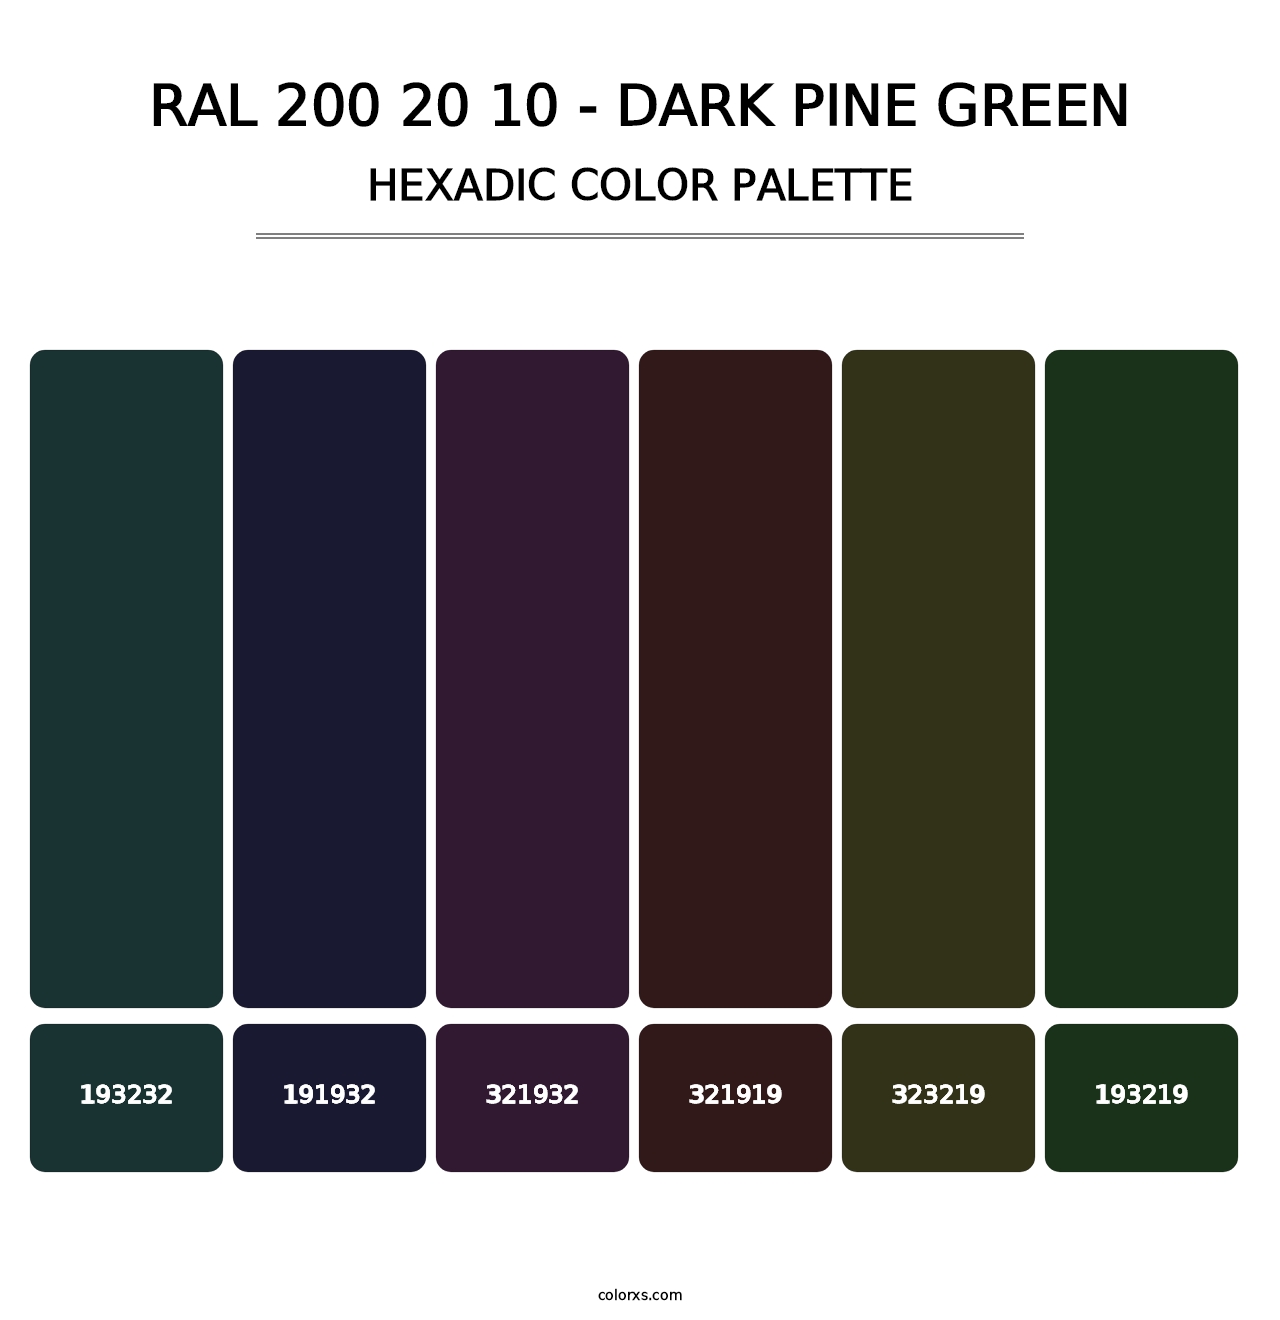 RAL 200 20 10 - Dark Pine Green - Hexadic Color Palette